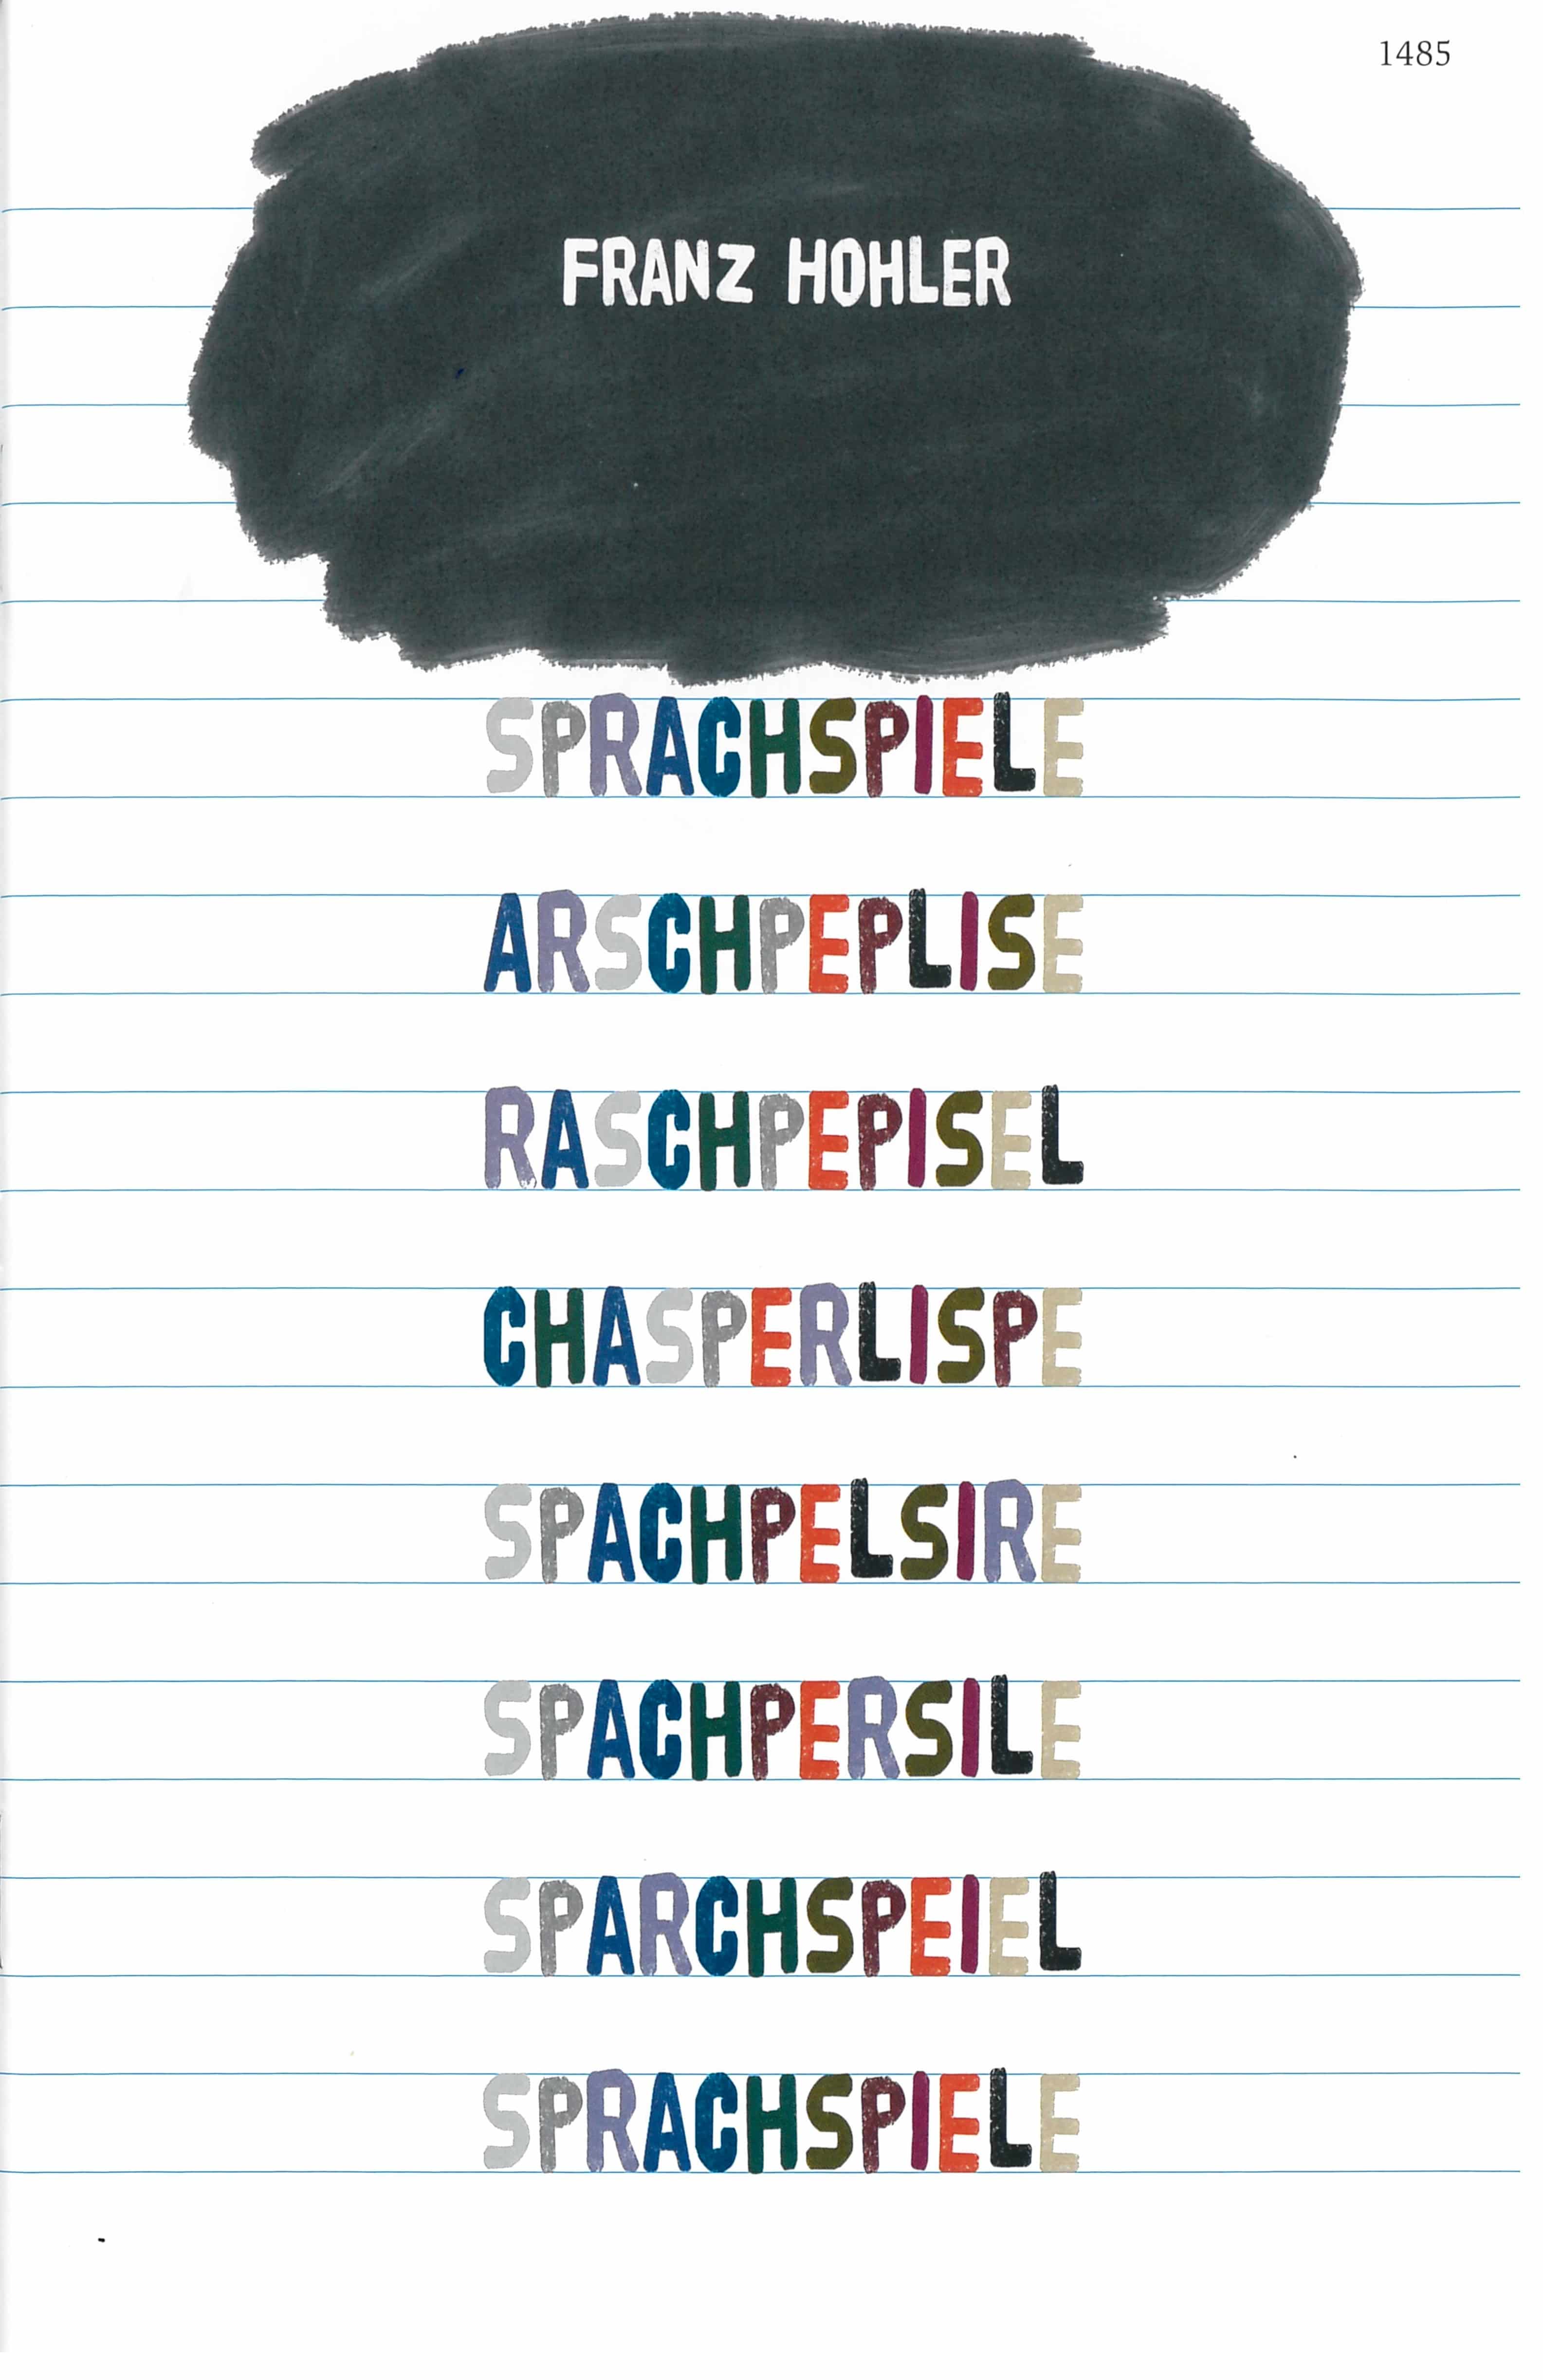 Sprachspiele, ein Kinderbuch von Franz Hohler, Illustration von Vera Eggermann, SJW Verlag, Schweizer Literatur